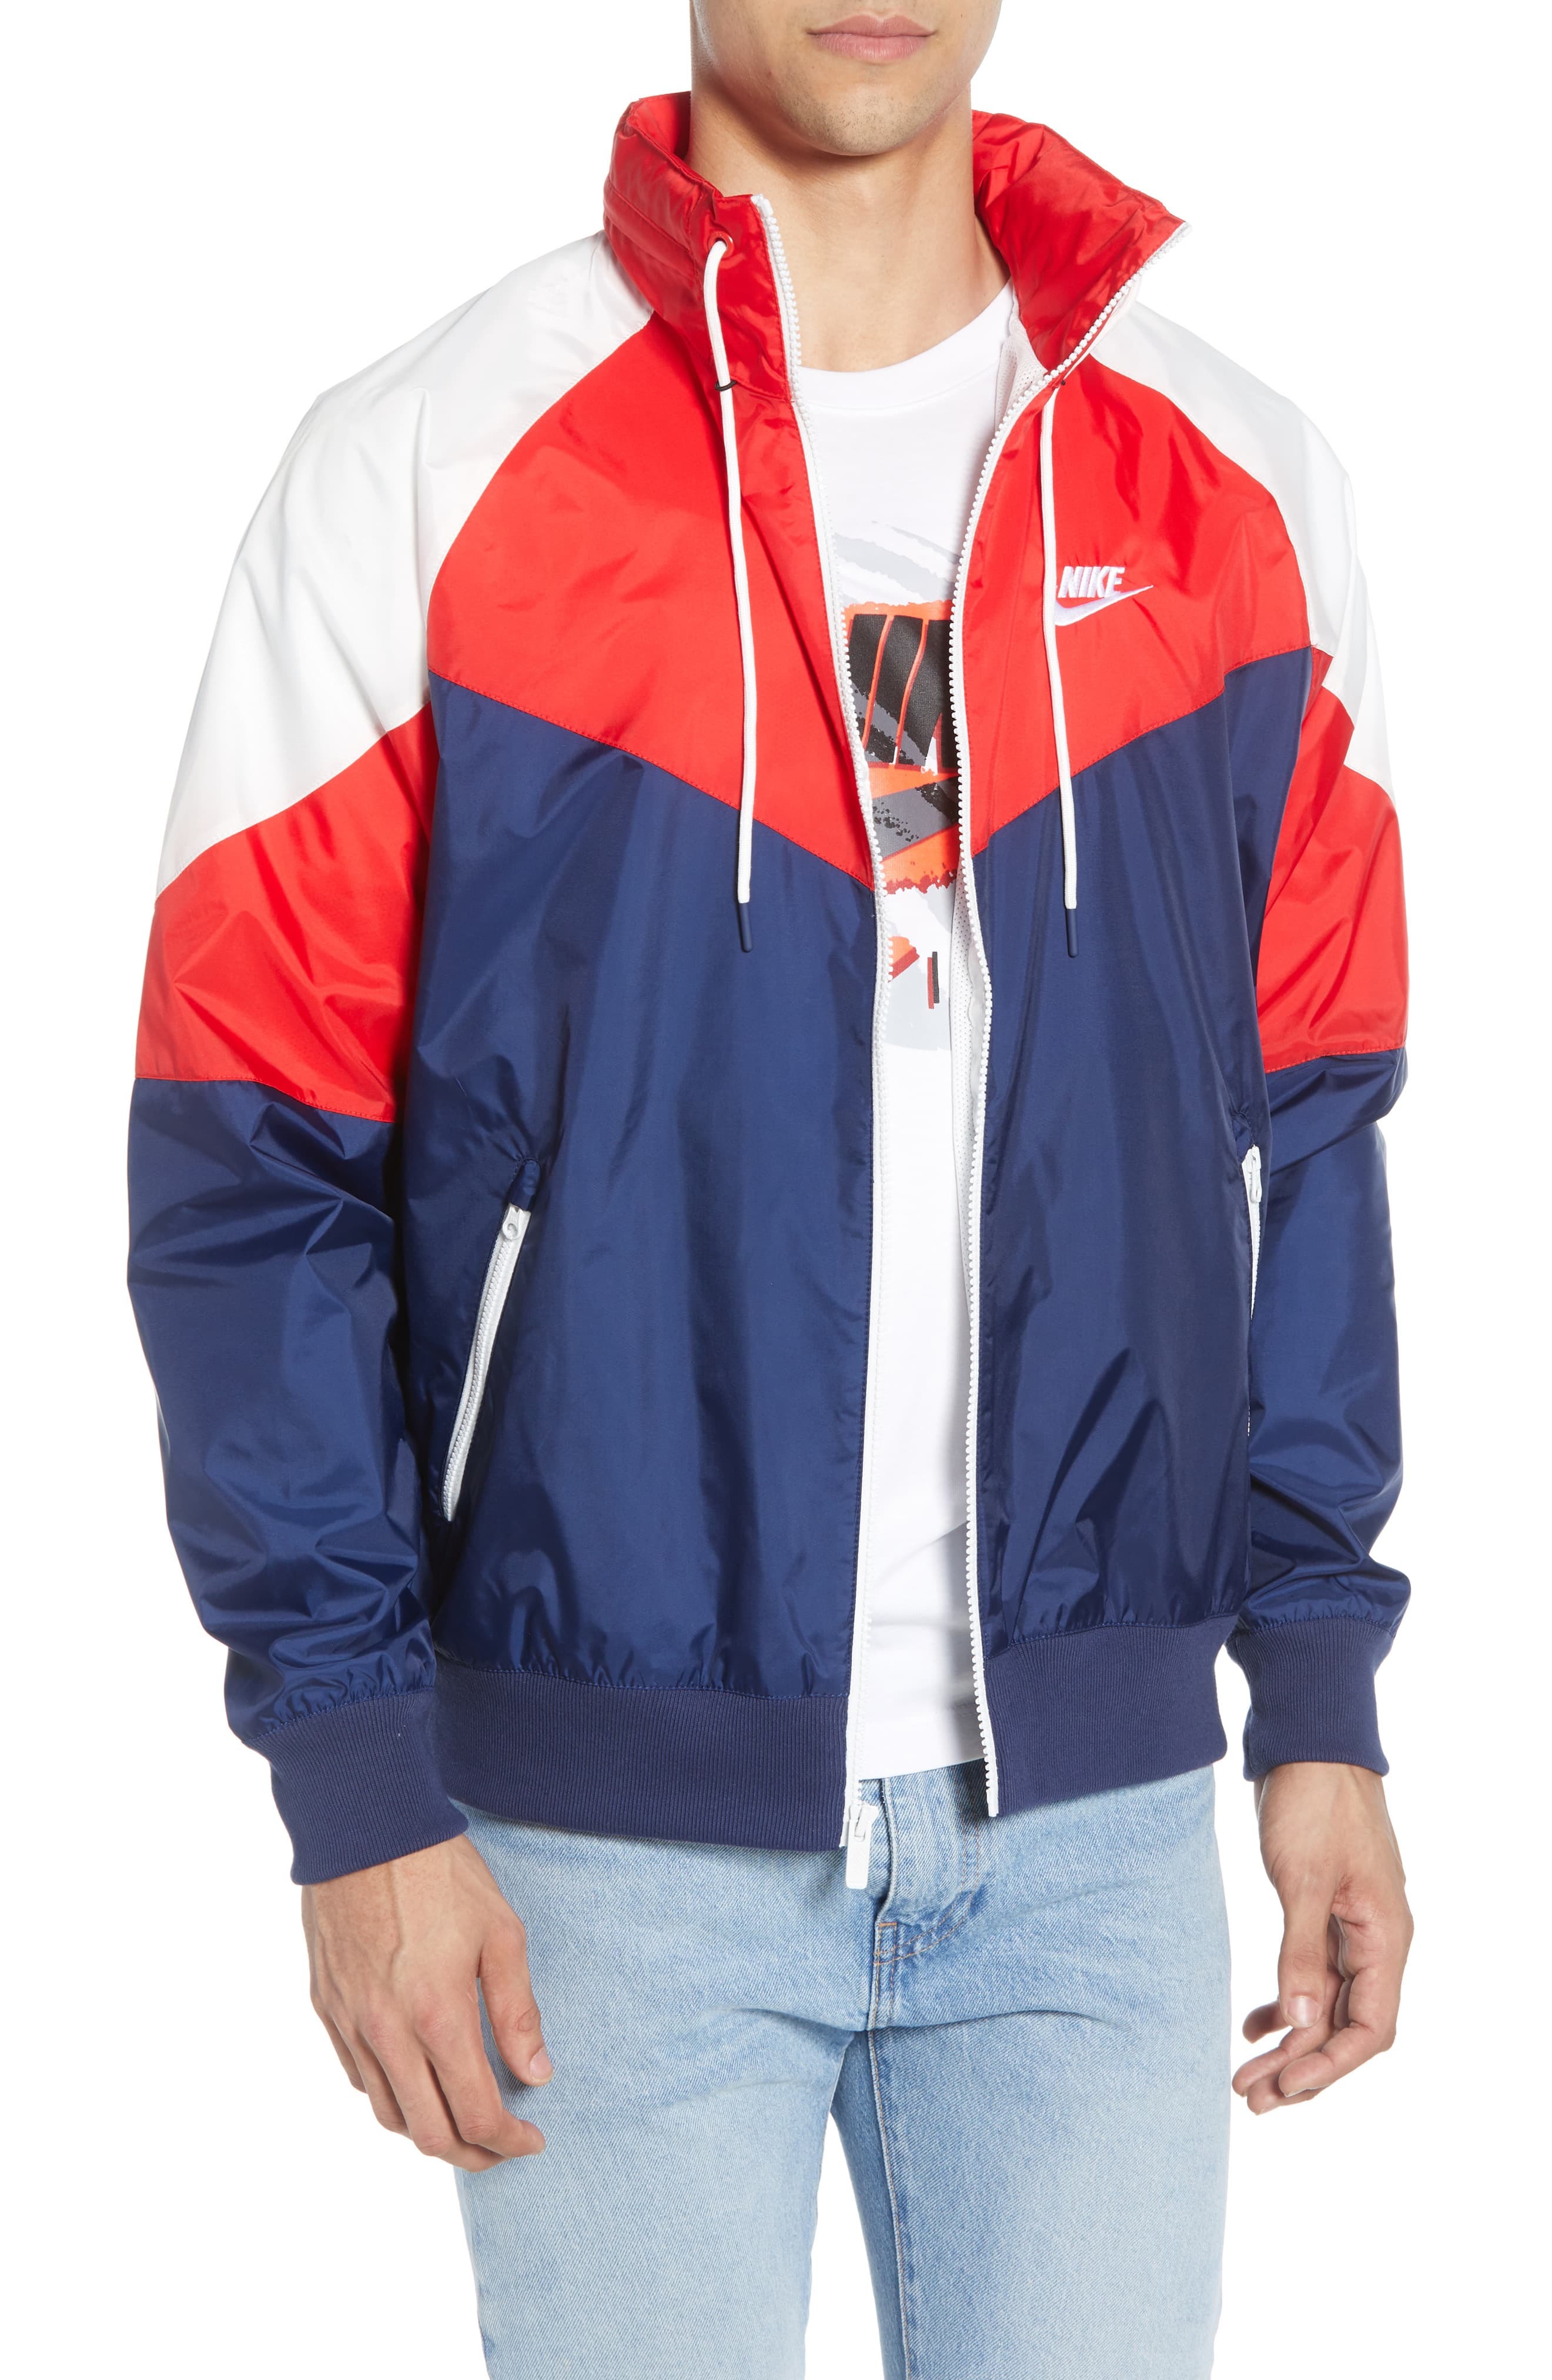 Nike Windrunner Jacket, $110 